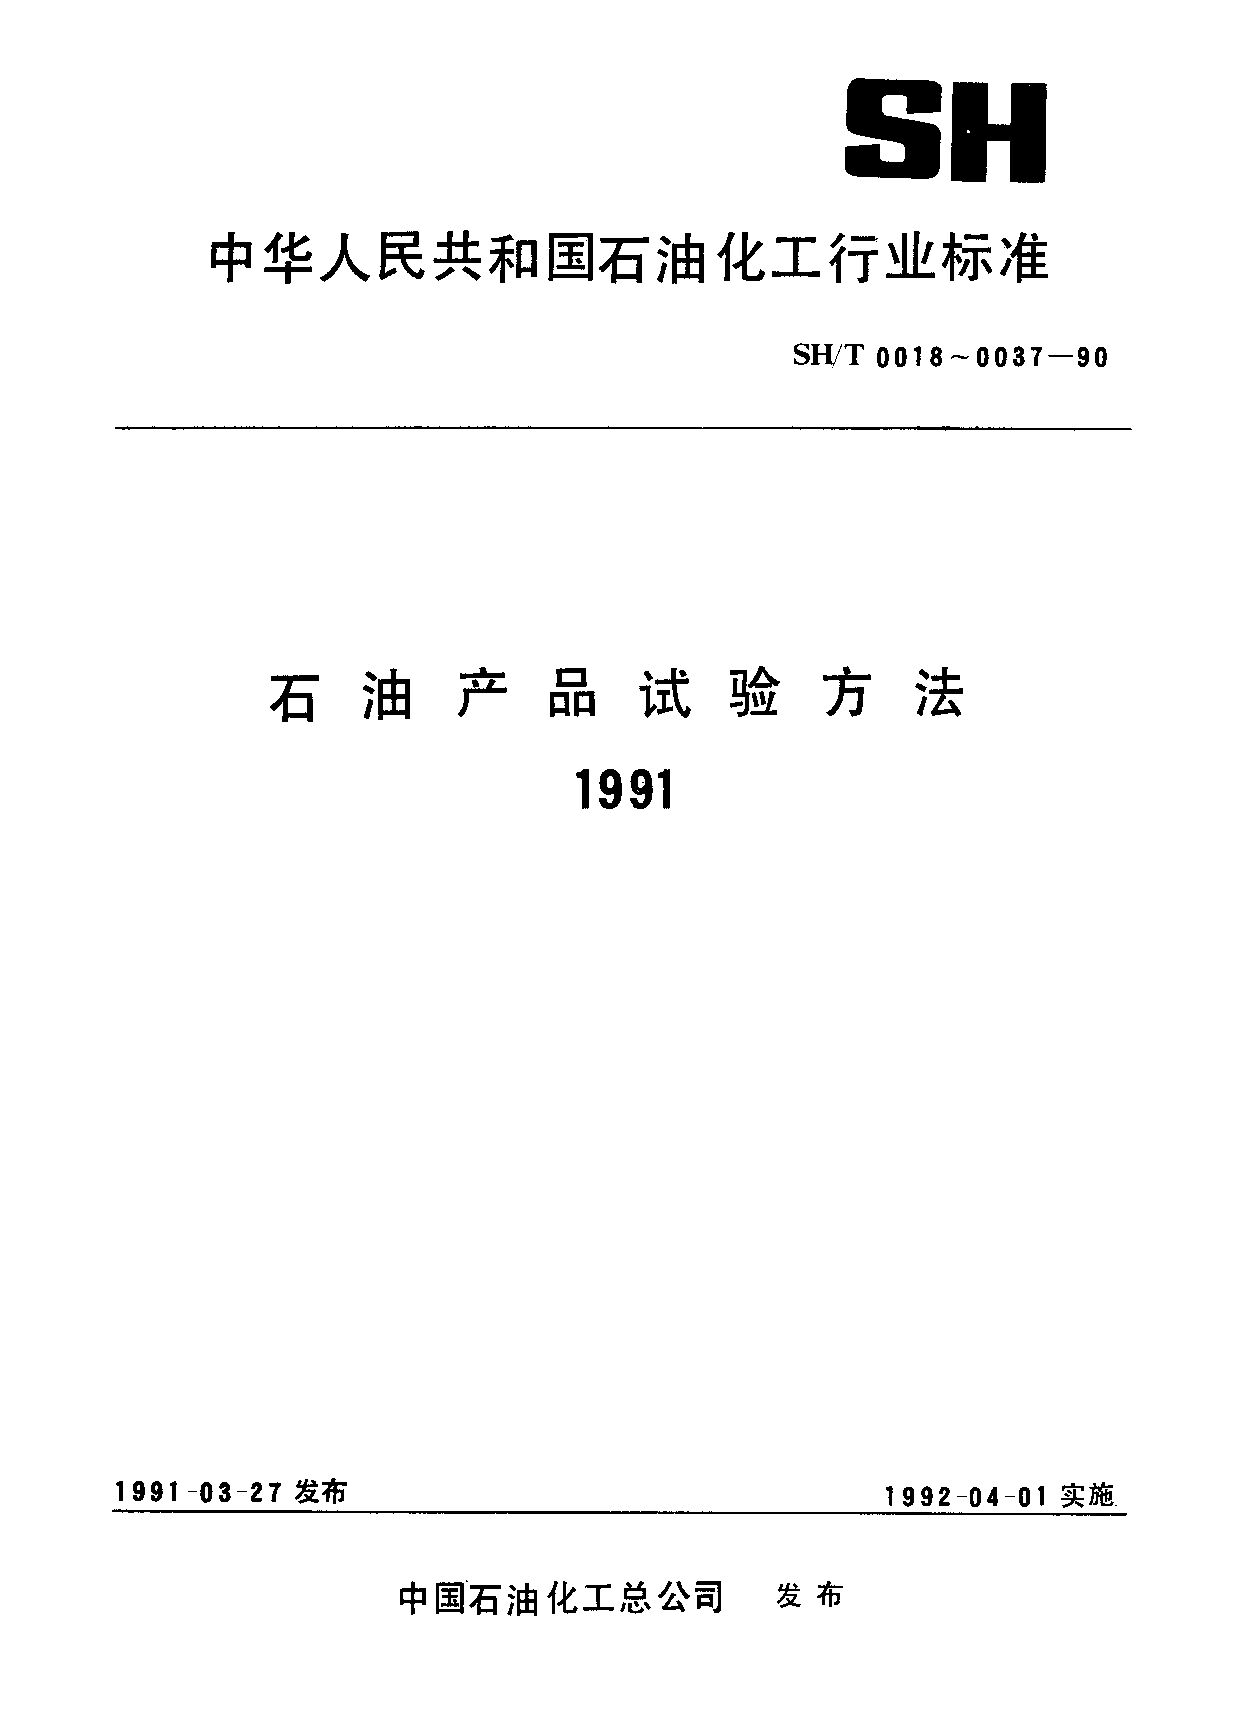 SH/T 0019-1990封面图